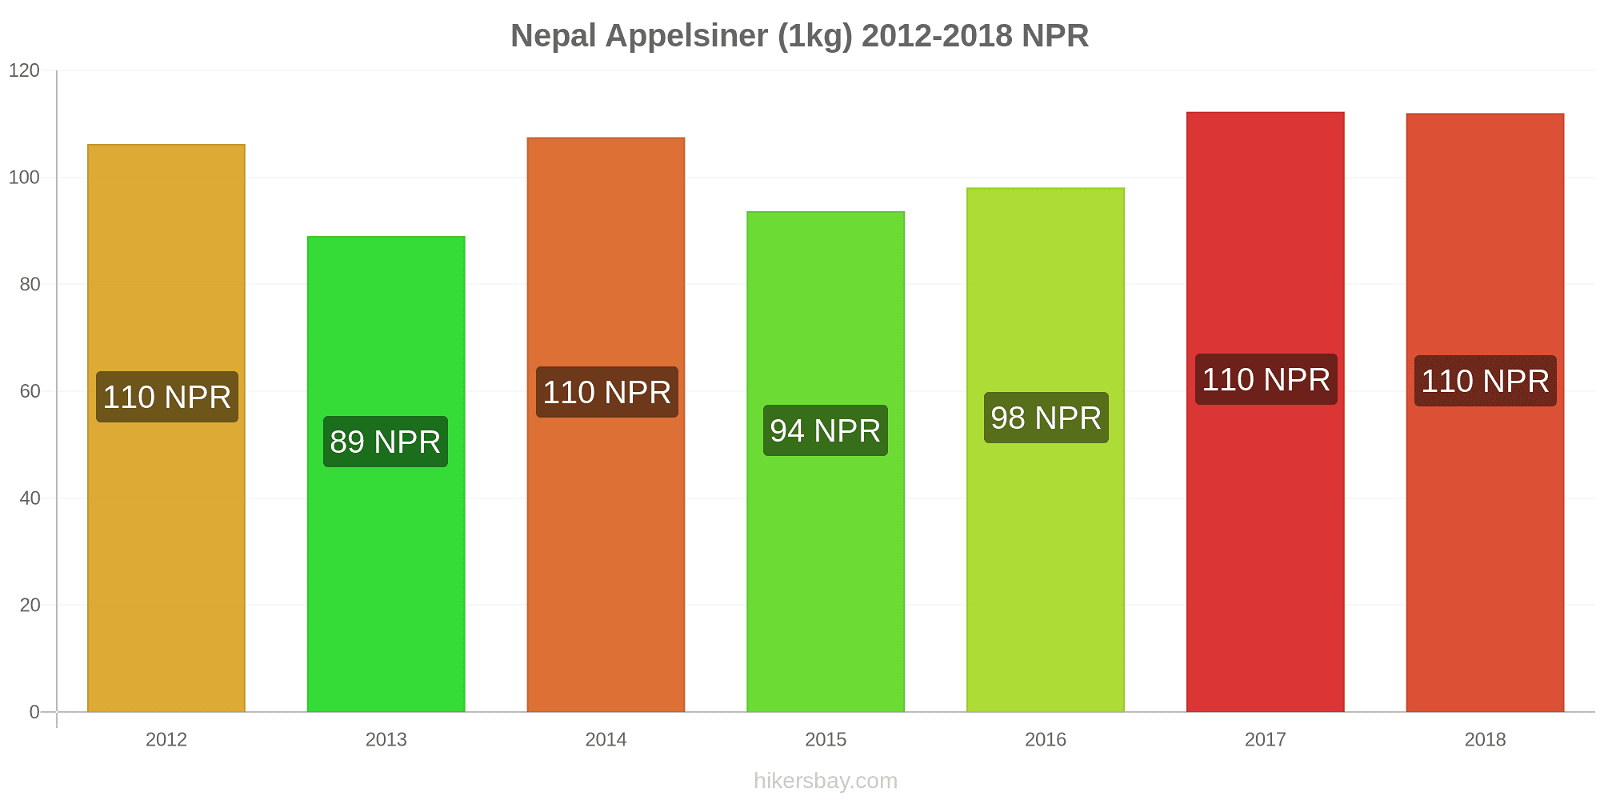 Nepal prisændringer Appelsiner (1kg) hikersbay.com